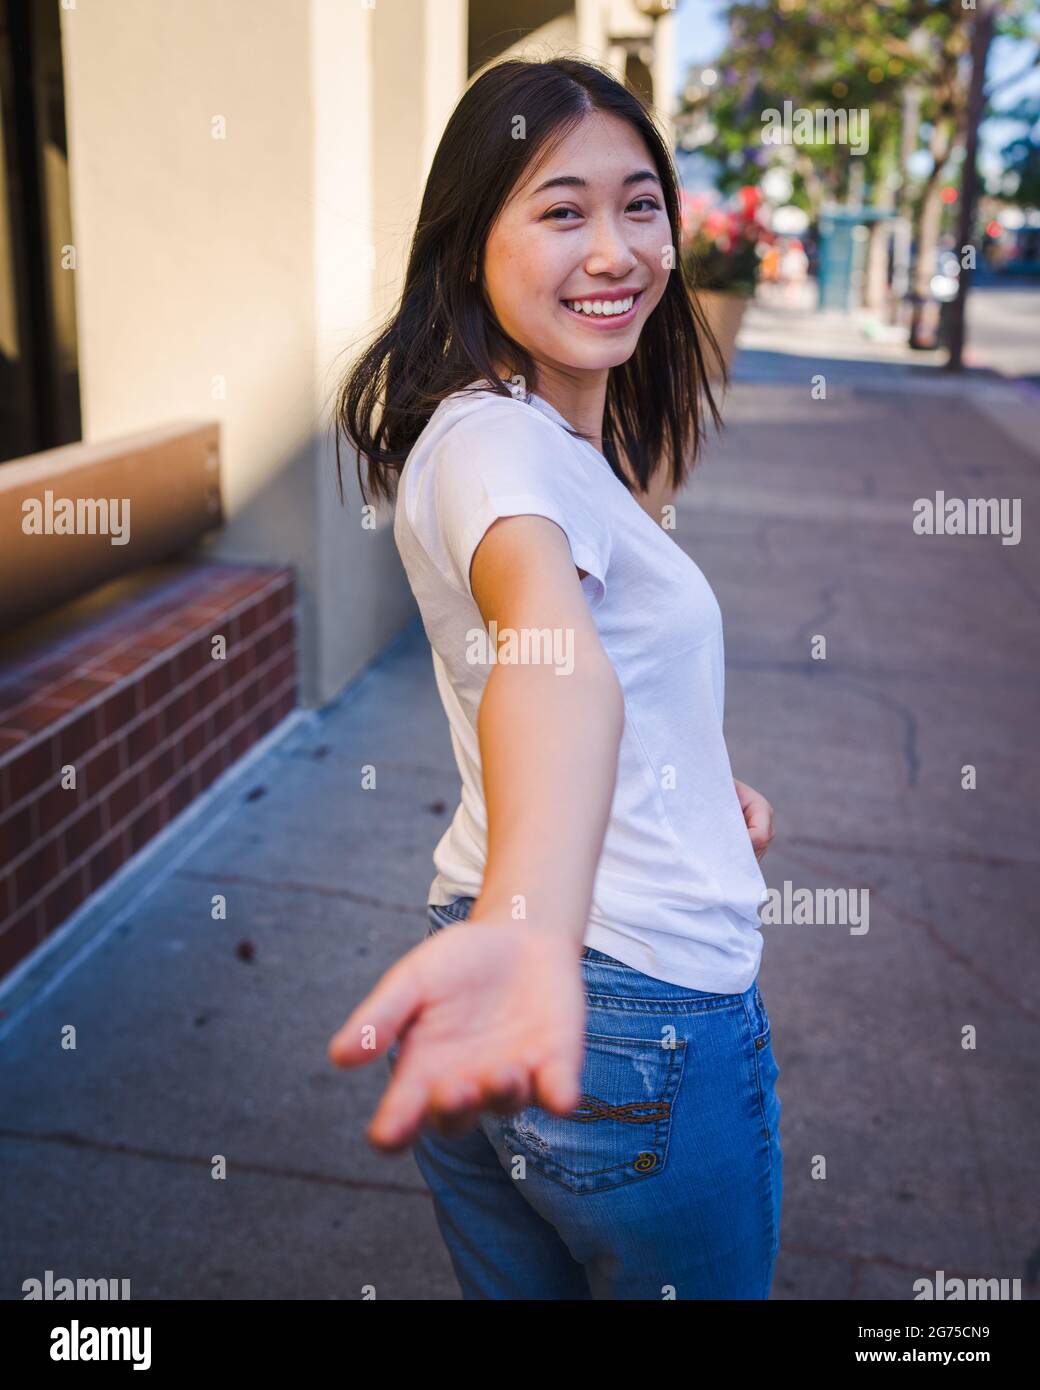 Zweisamkeit, glückliche junge asiatische Frau, die nach hinten greift, um Ihre Hand zu ergreifen Stockfoto